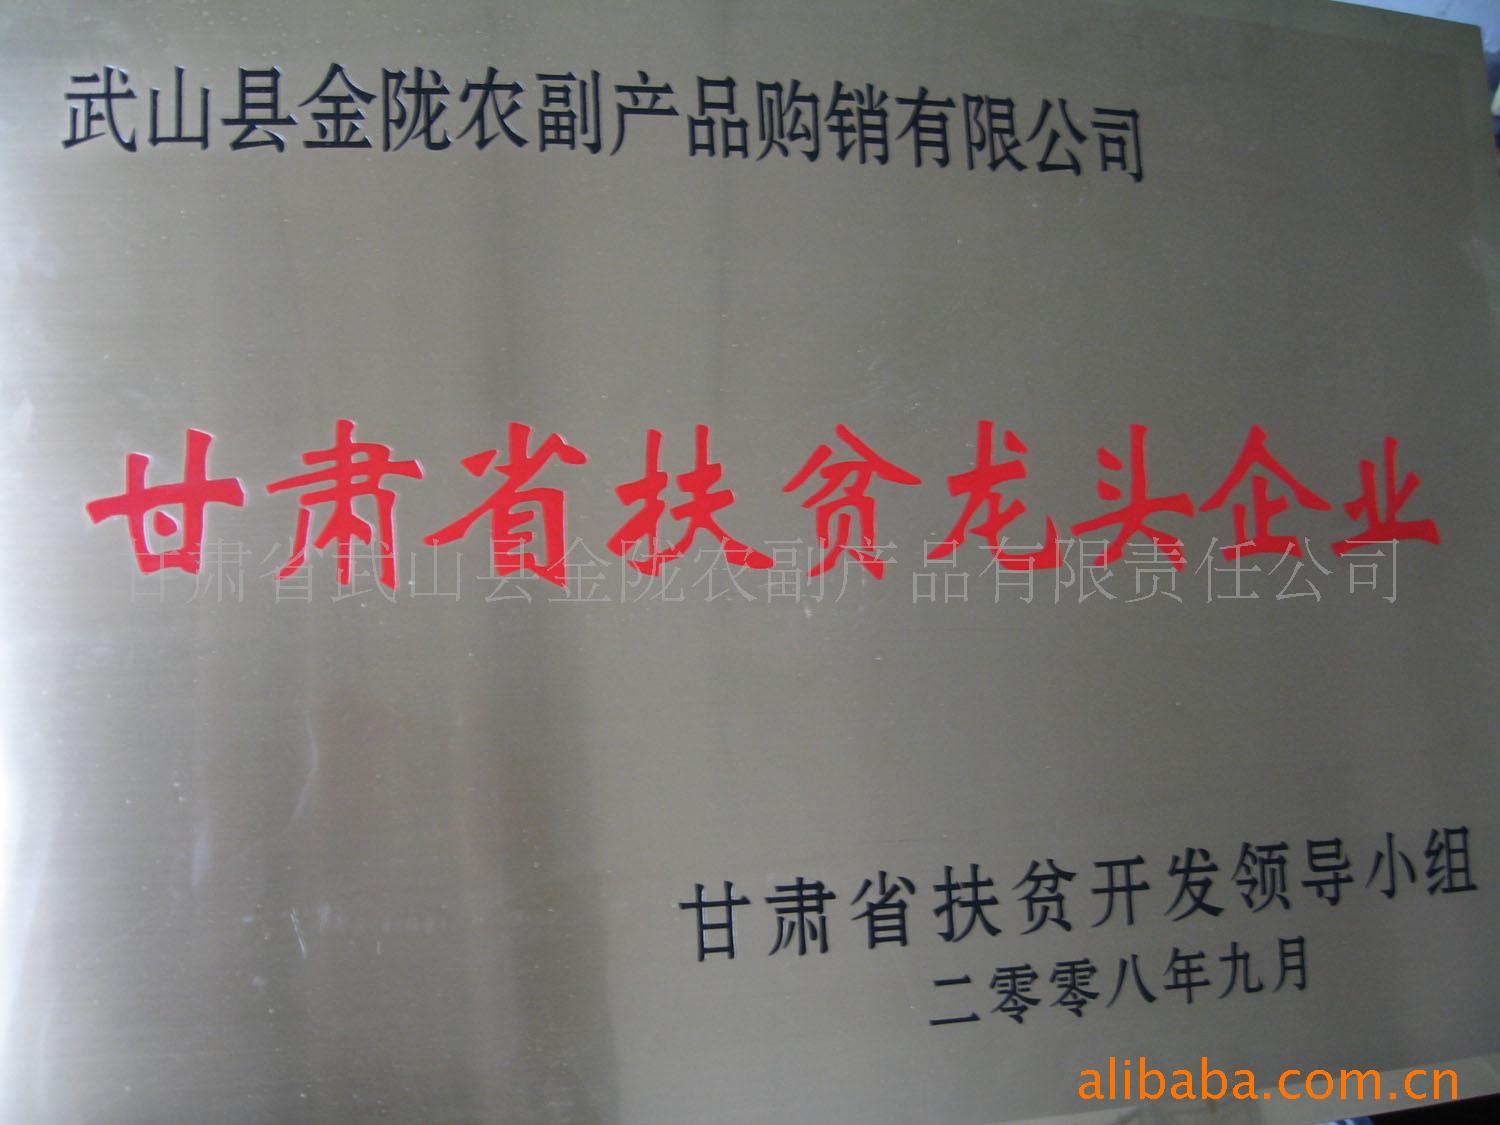 2008年评为甘肃省扶贫龙头企业